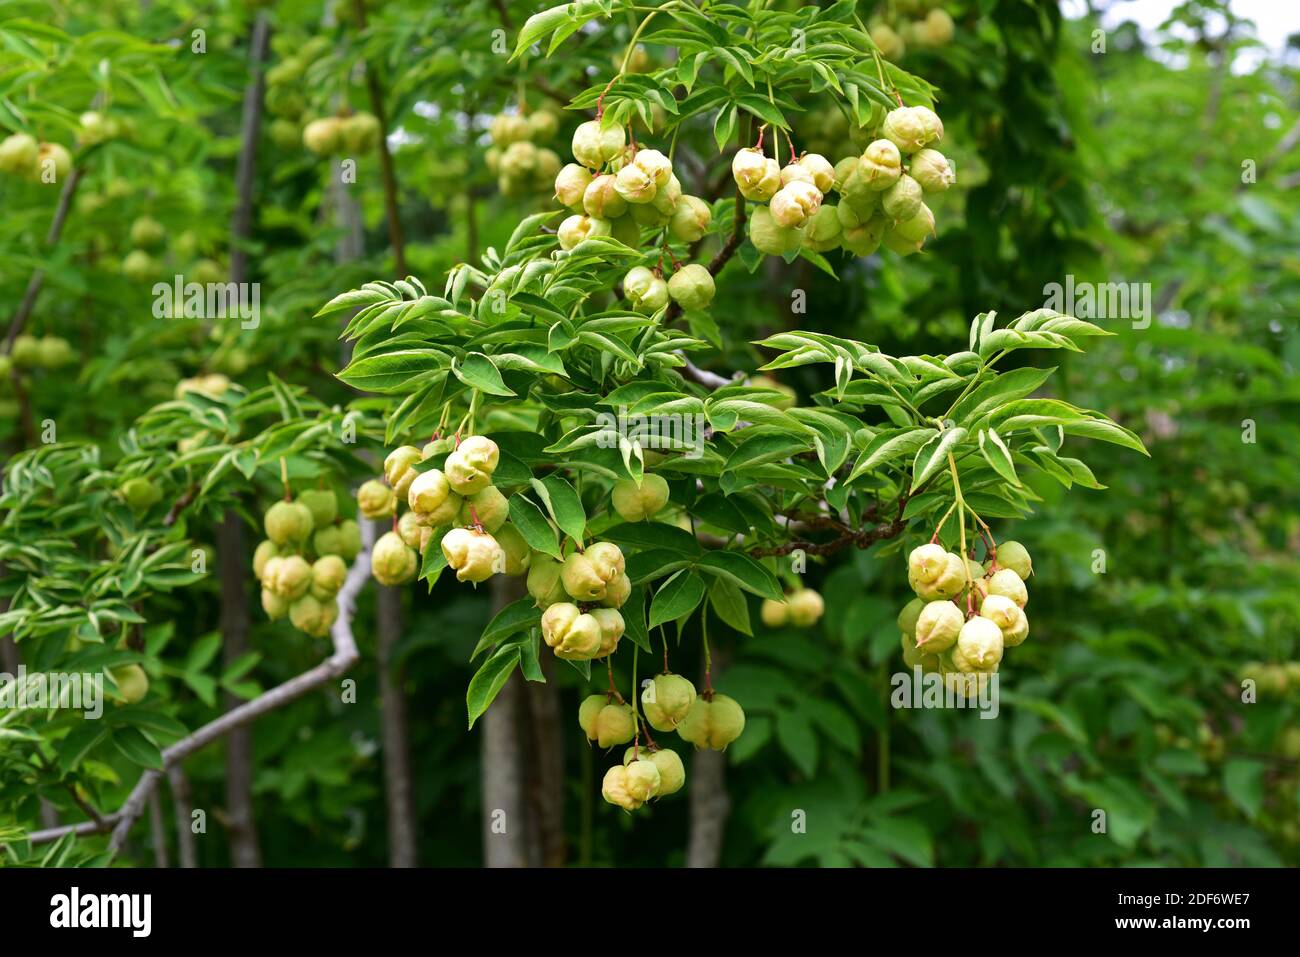 La madrelingua europea (Staphylea pinnata) è un piccolo albero originario dell'Europa centrale. I suoi semi sono commestibili. Foto Stock